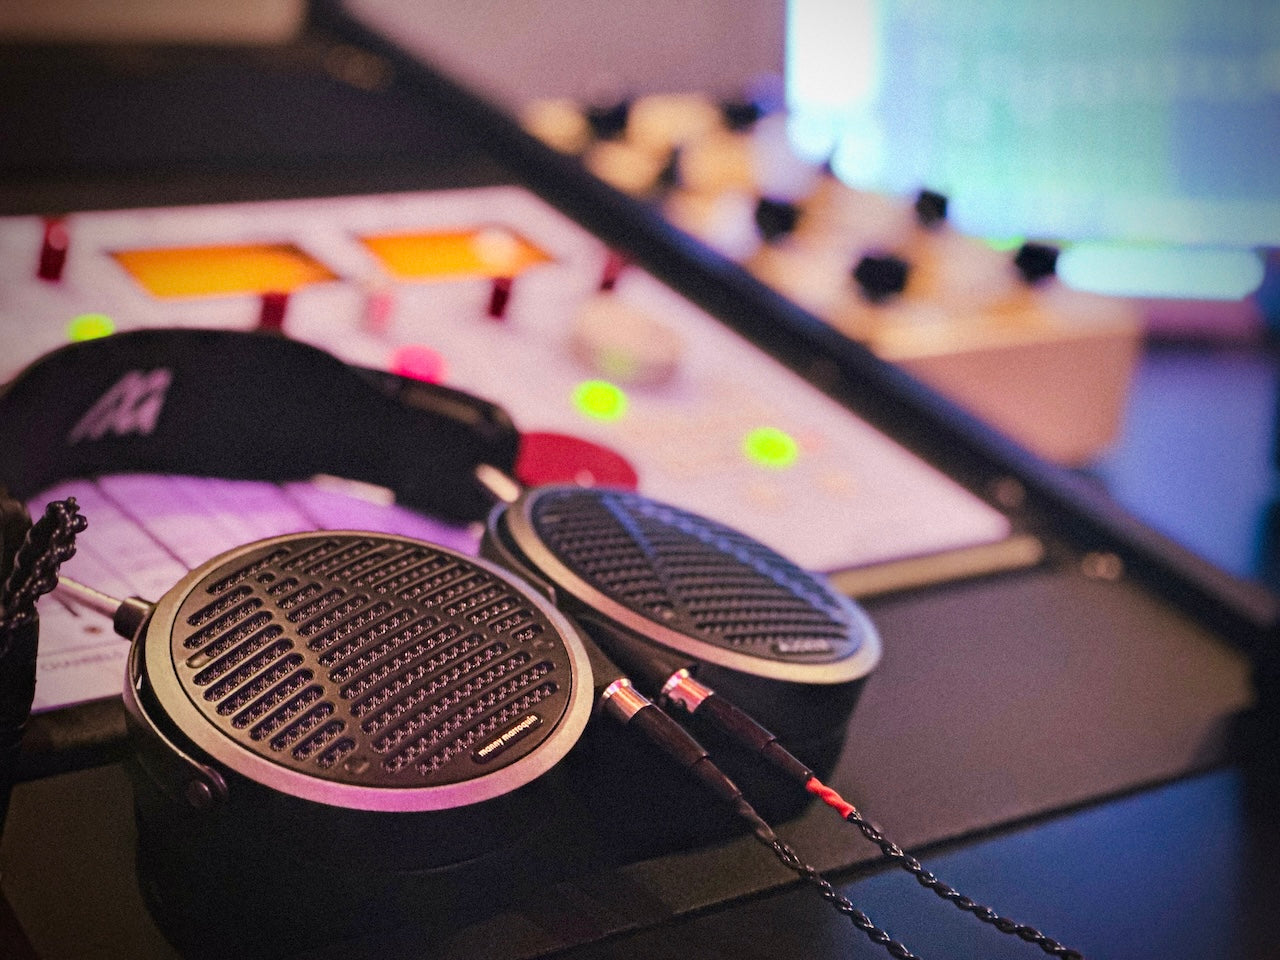 Audeze MM-500 headphones on mixing board